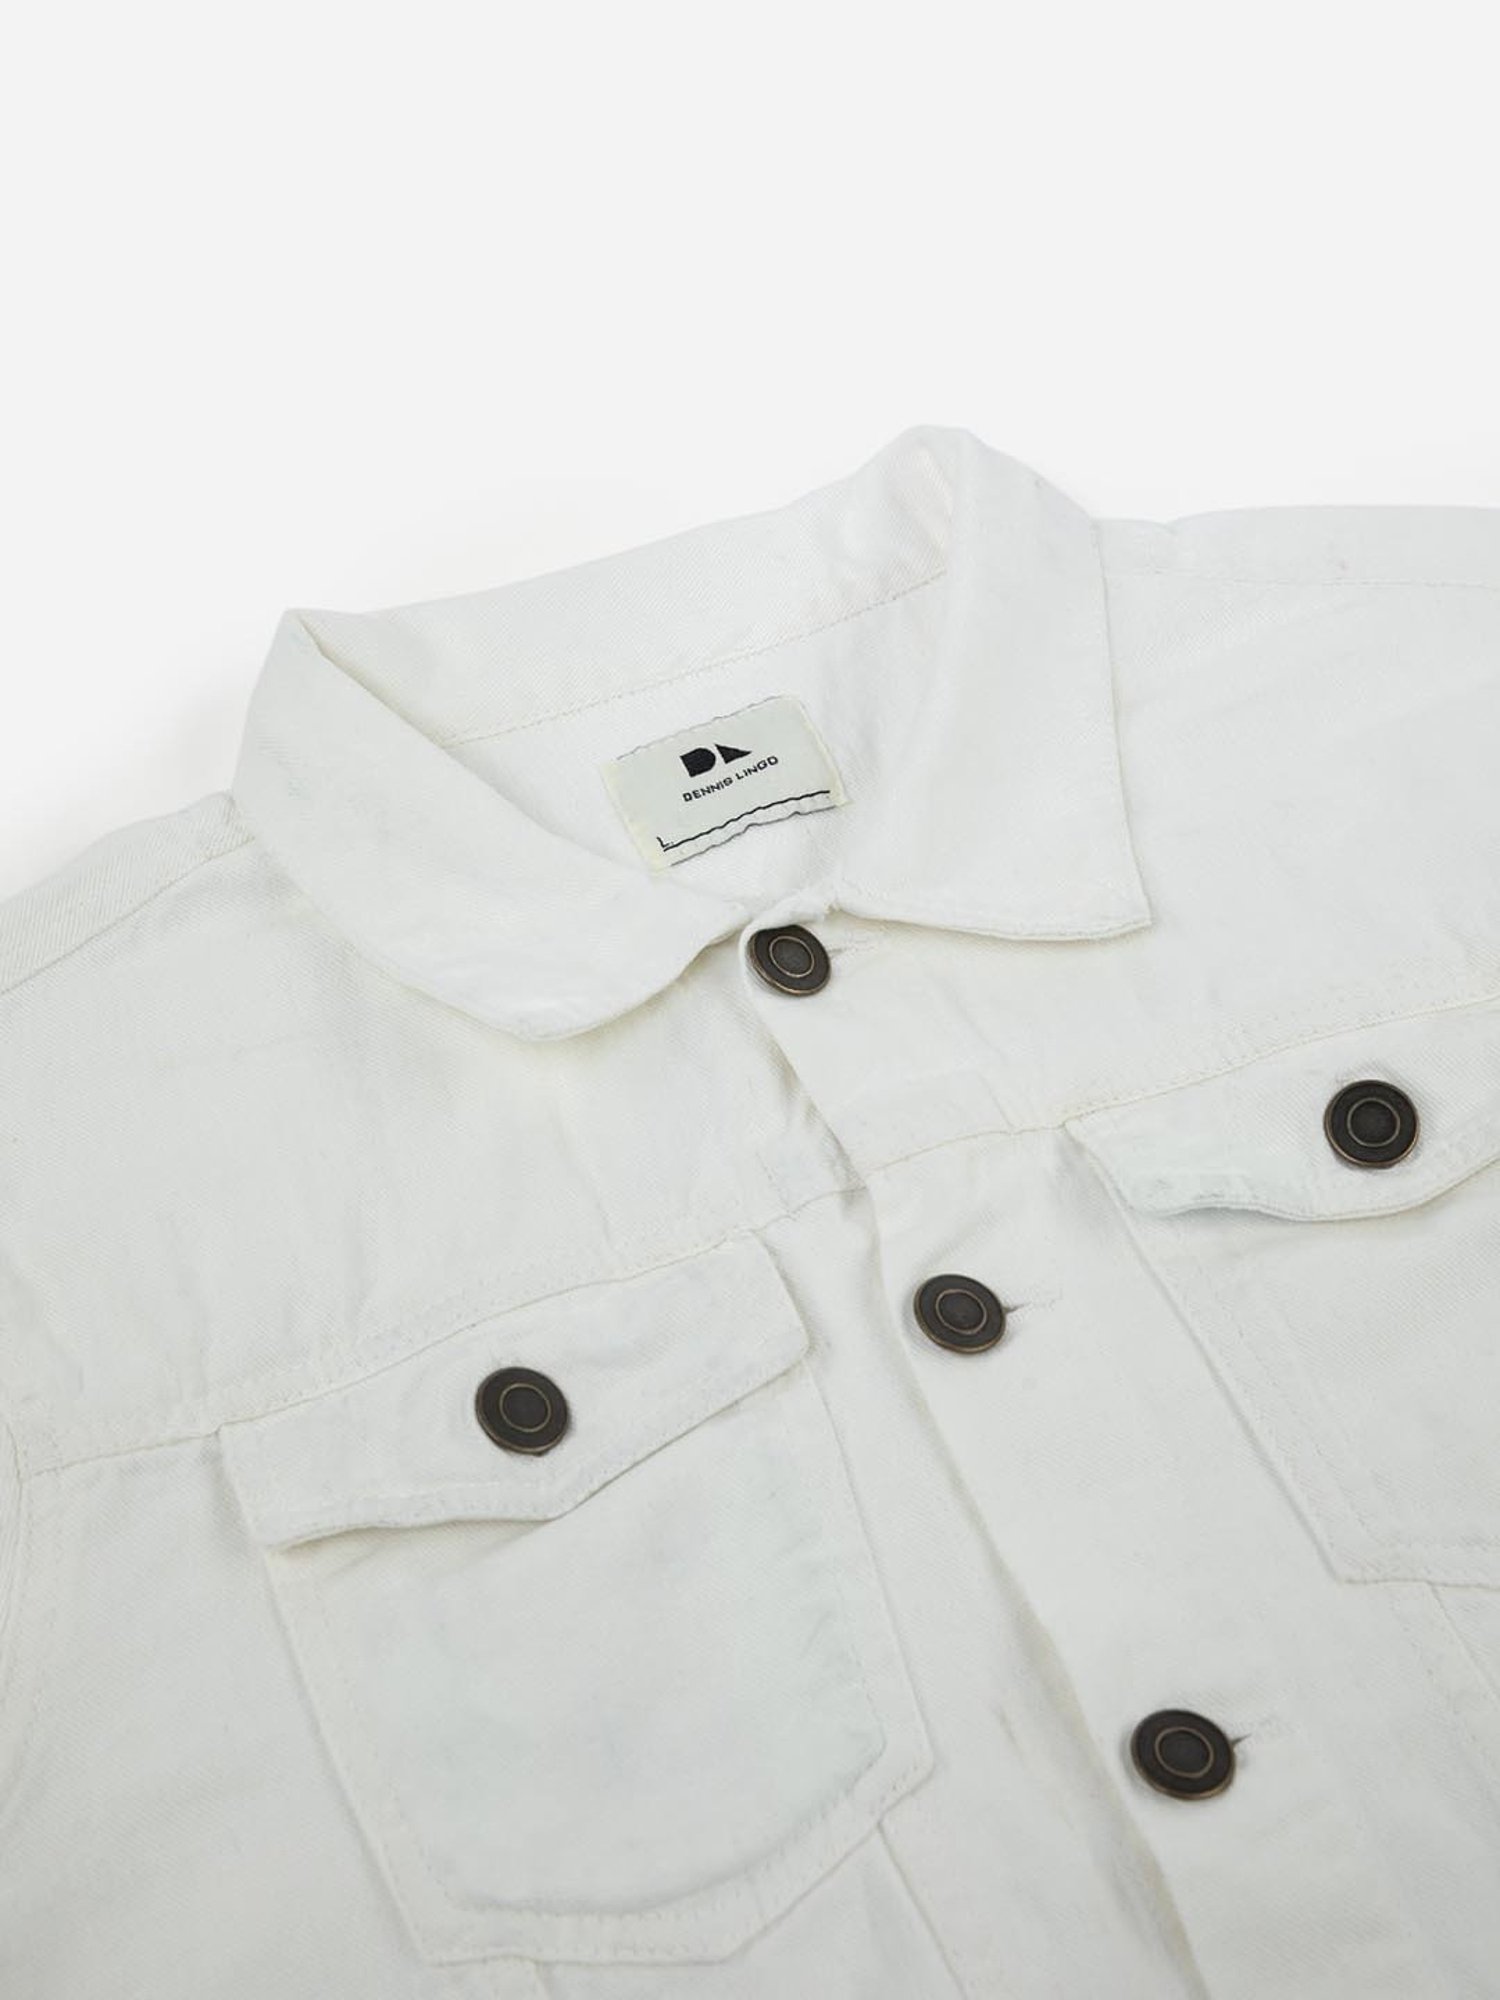 Jacket - White denim jacket | Fendi